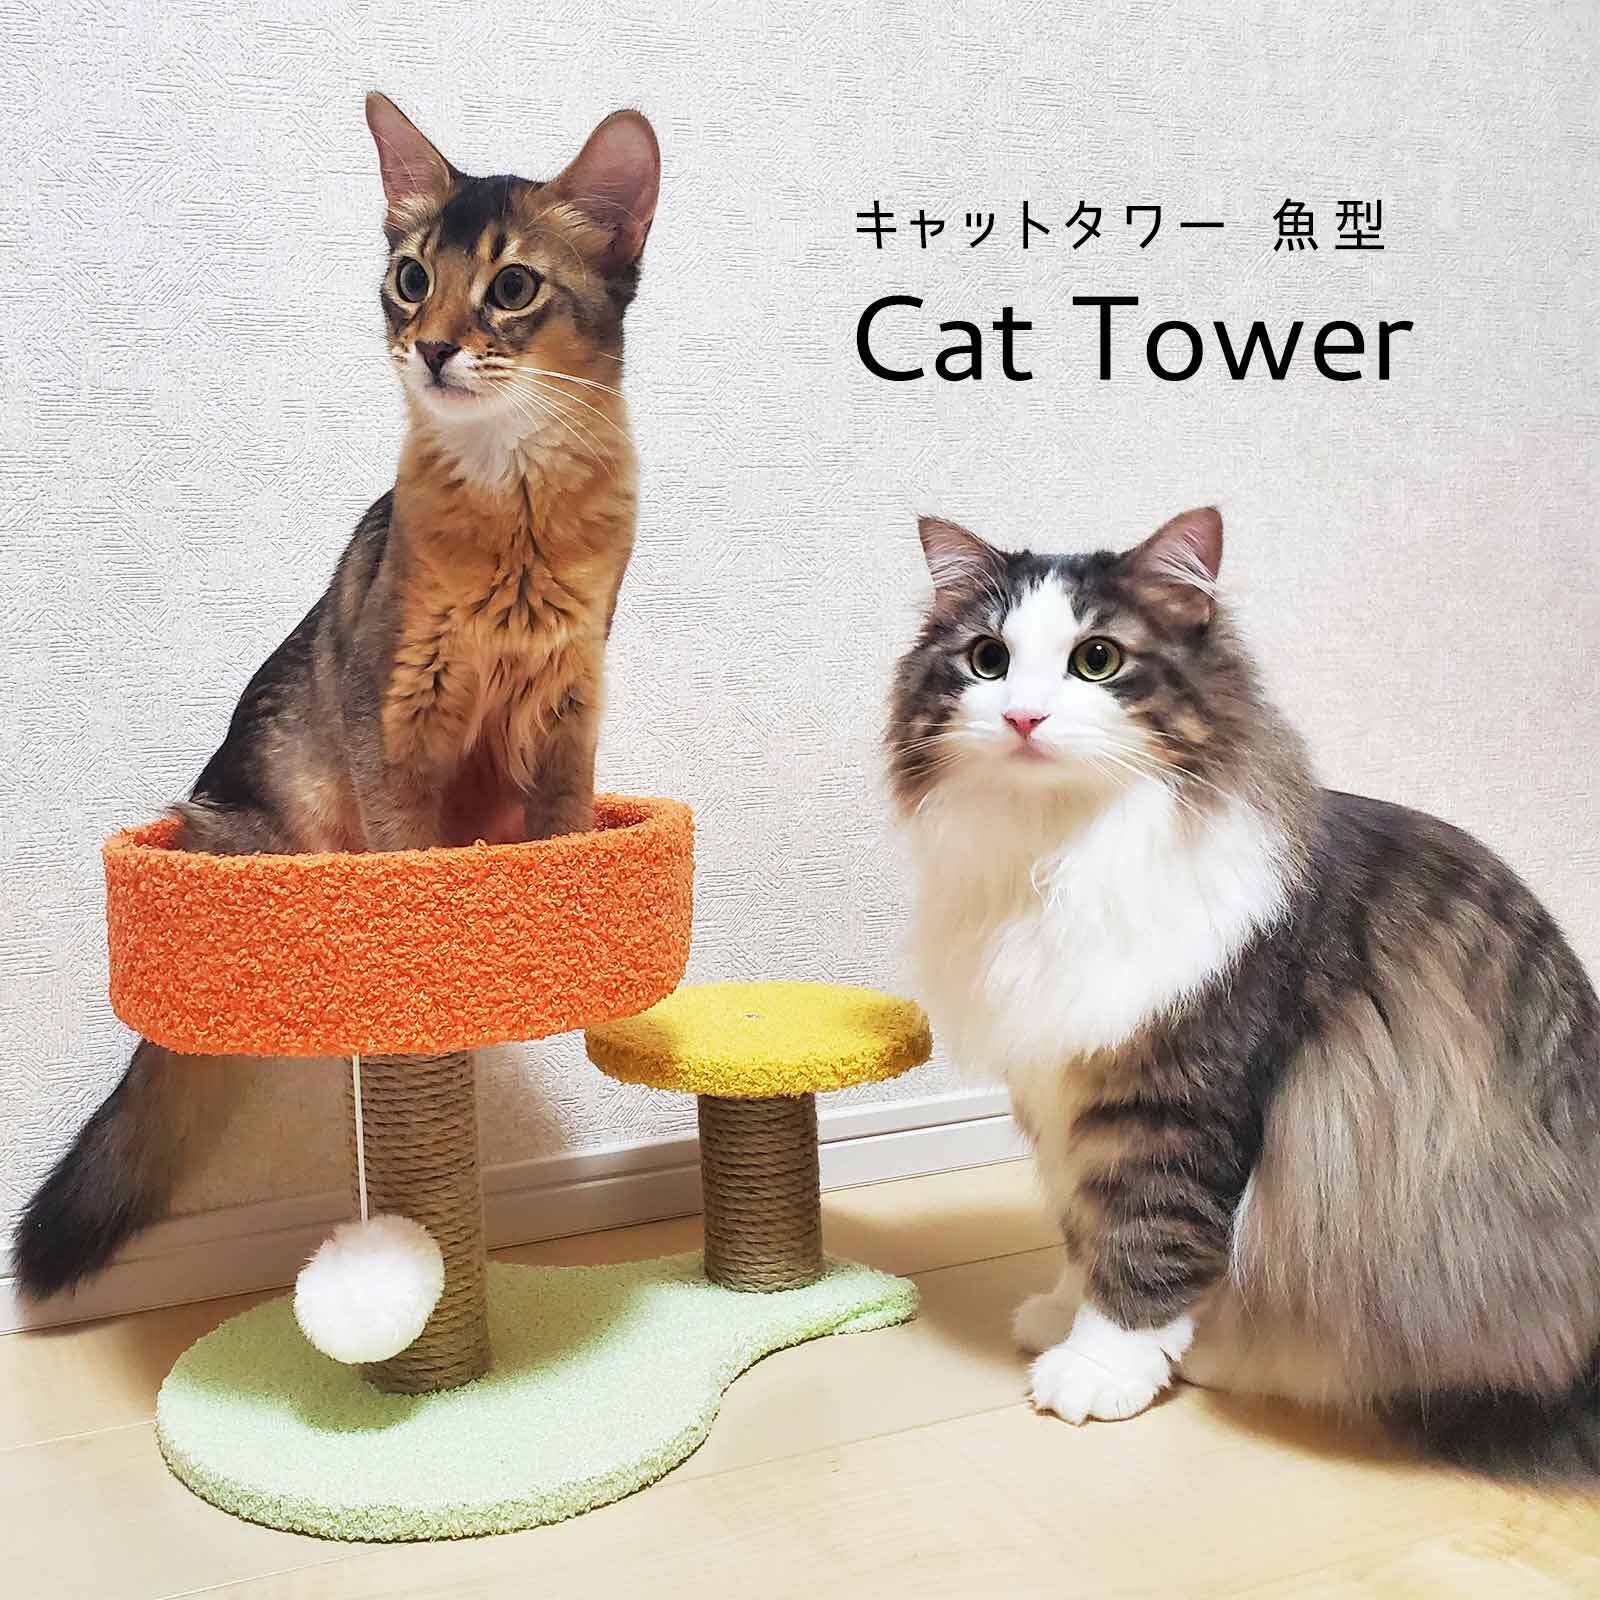 キャットタワー グレー 省スペース 爪研ぎ 簡単組立 安定感 安全 猫好き